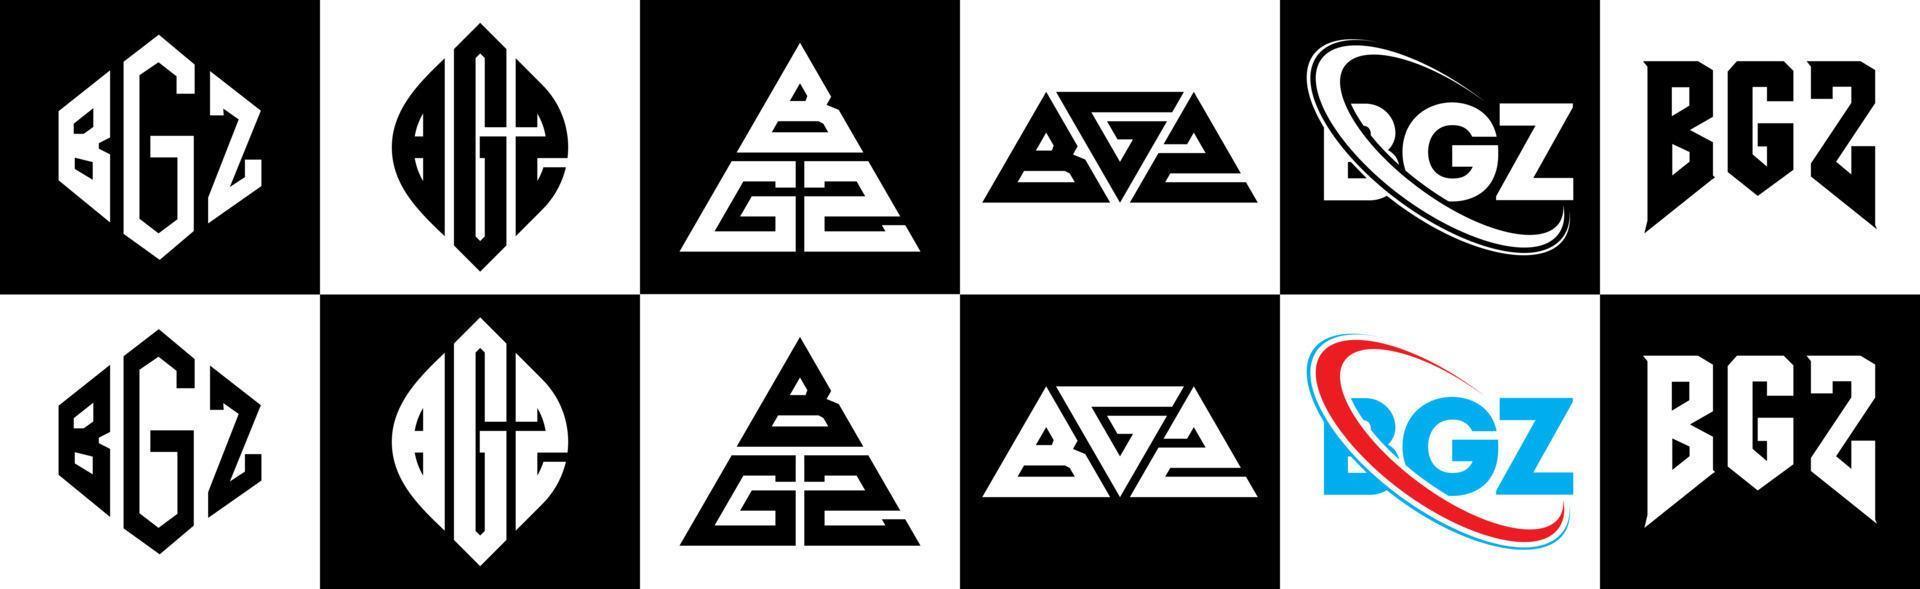 Diseño de logotipo de letra bgz en seis estilos. polígono bgz, círculo, triángulo, hexágono, estilo plano y simple con logotipo de letra de variación de color blanco y negro en una mesa de trabajo. logo bgz minimalista y clásico vector